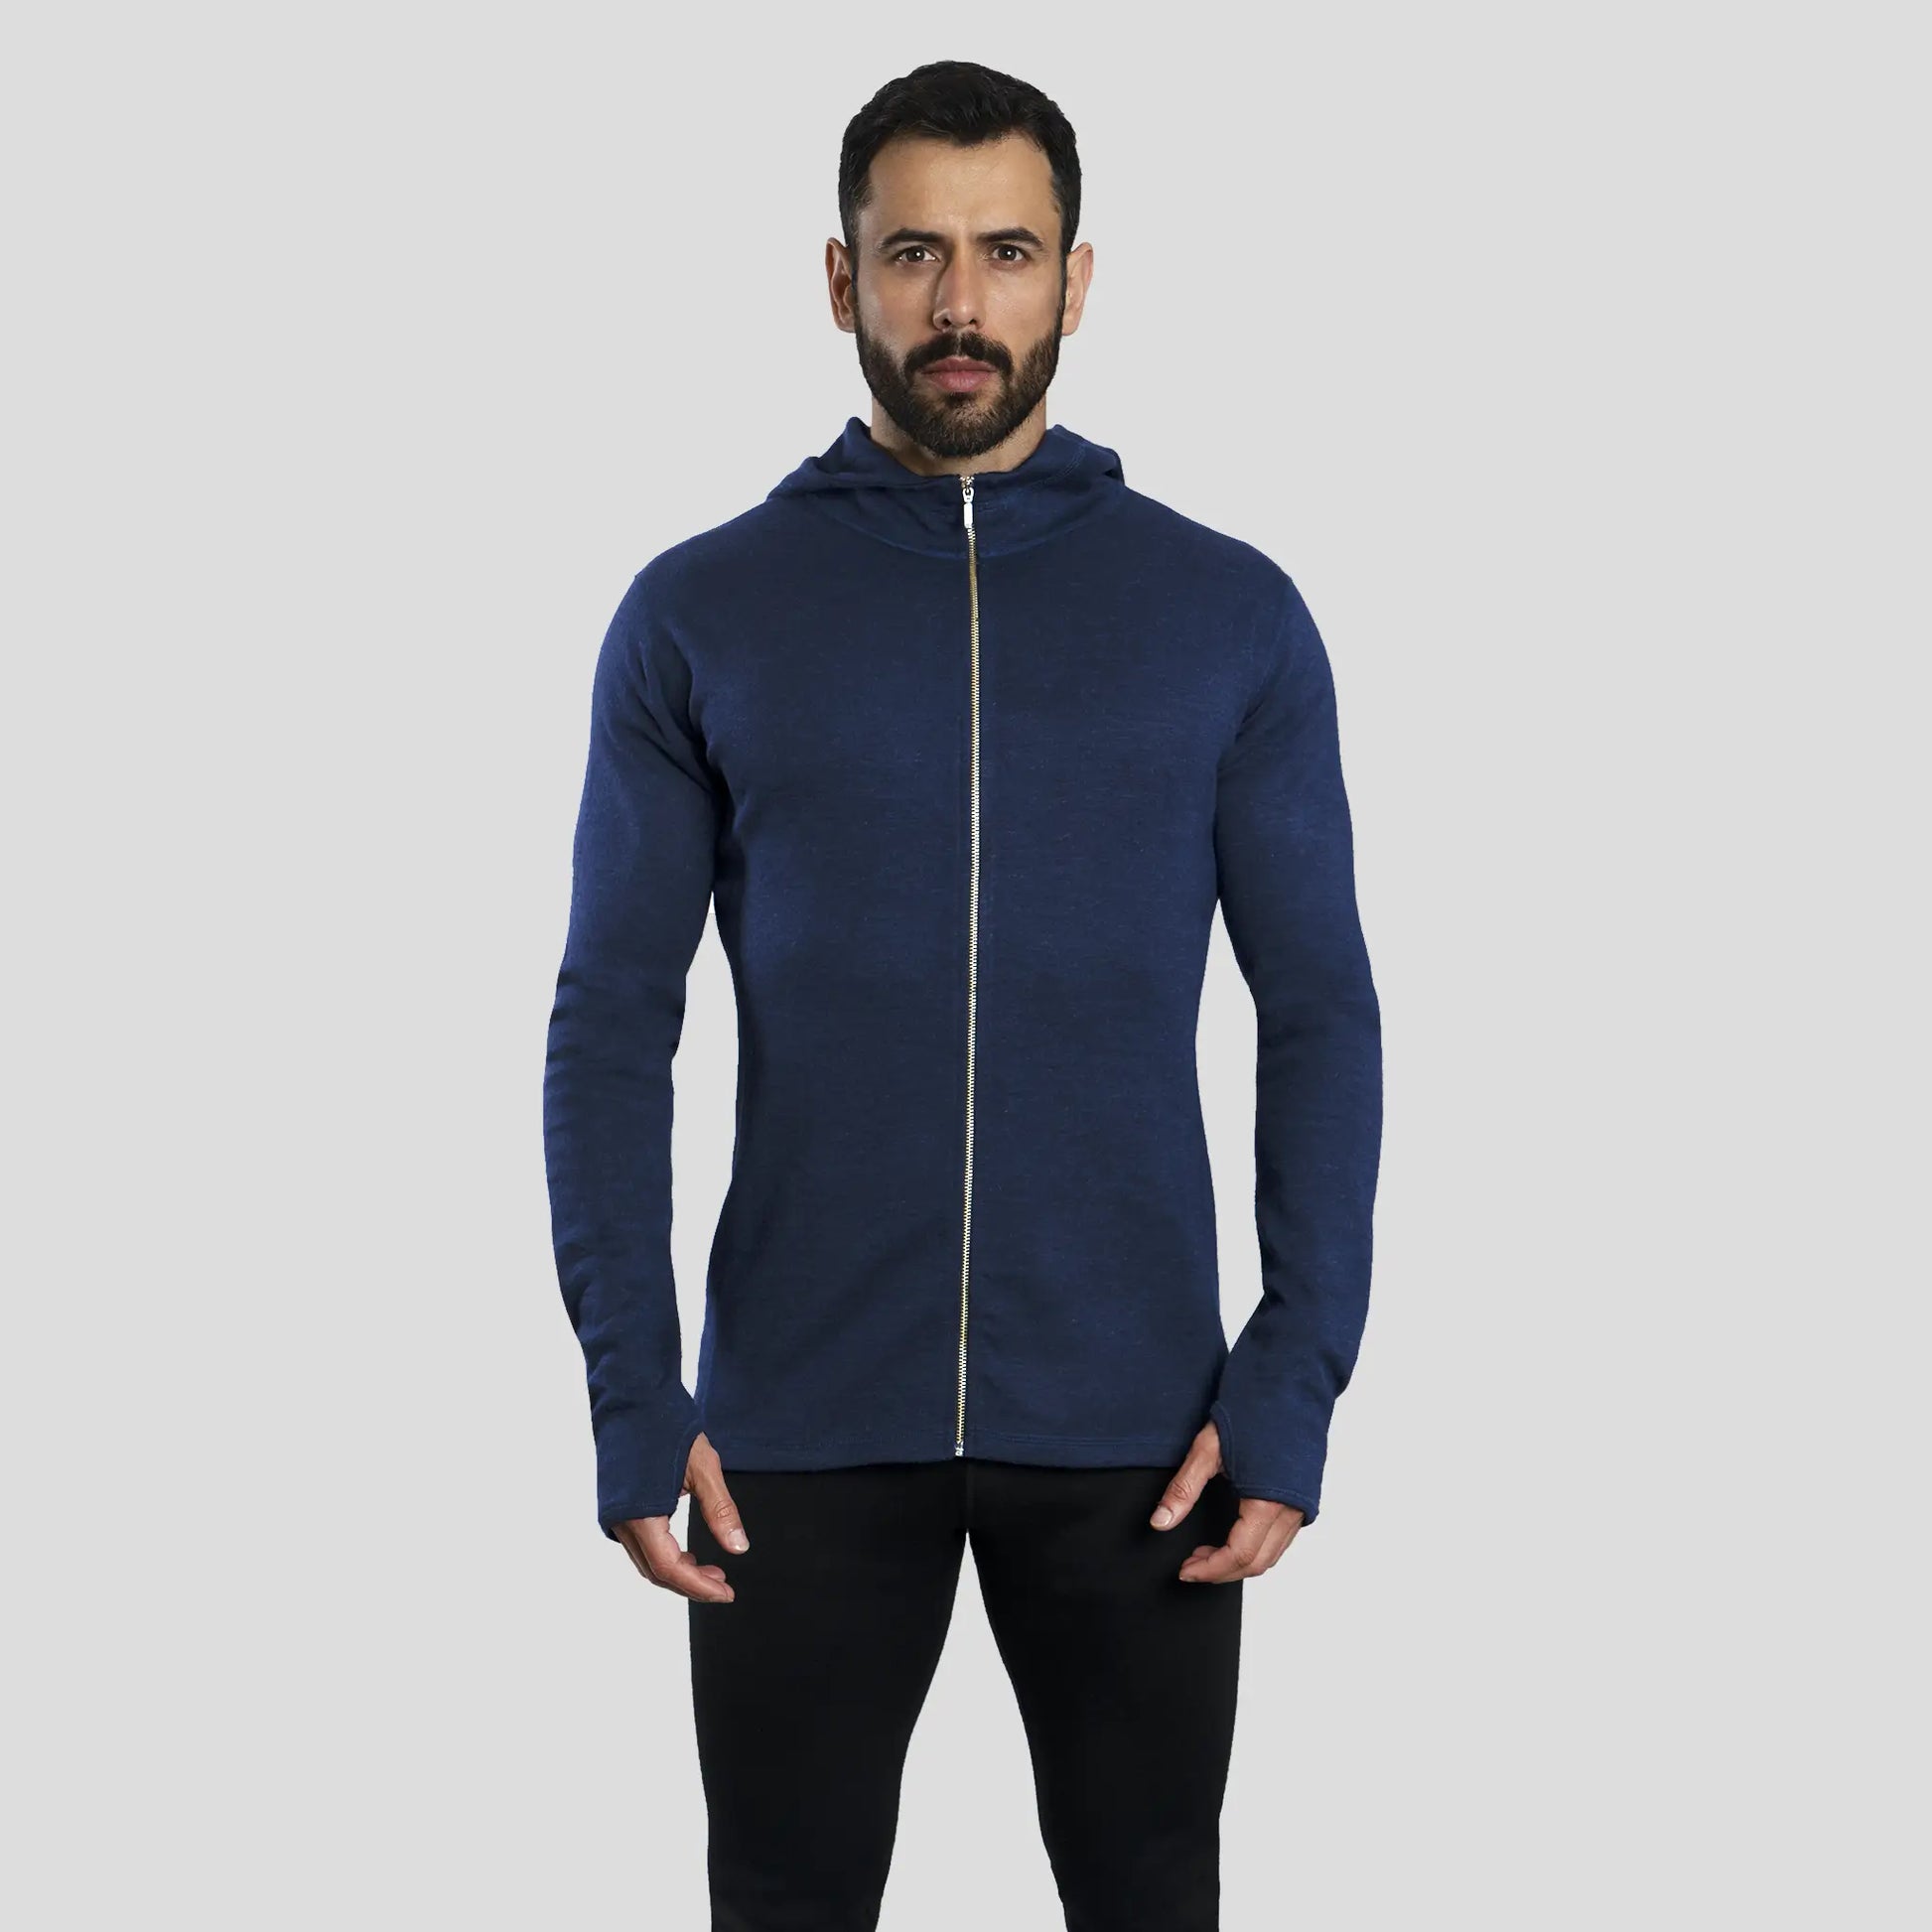 mens comfortable fit hoodie jacket full zip color navy blue